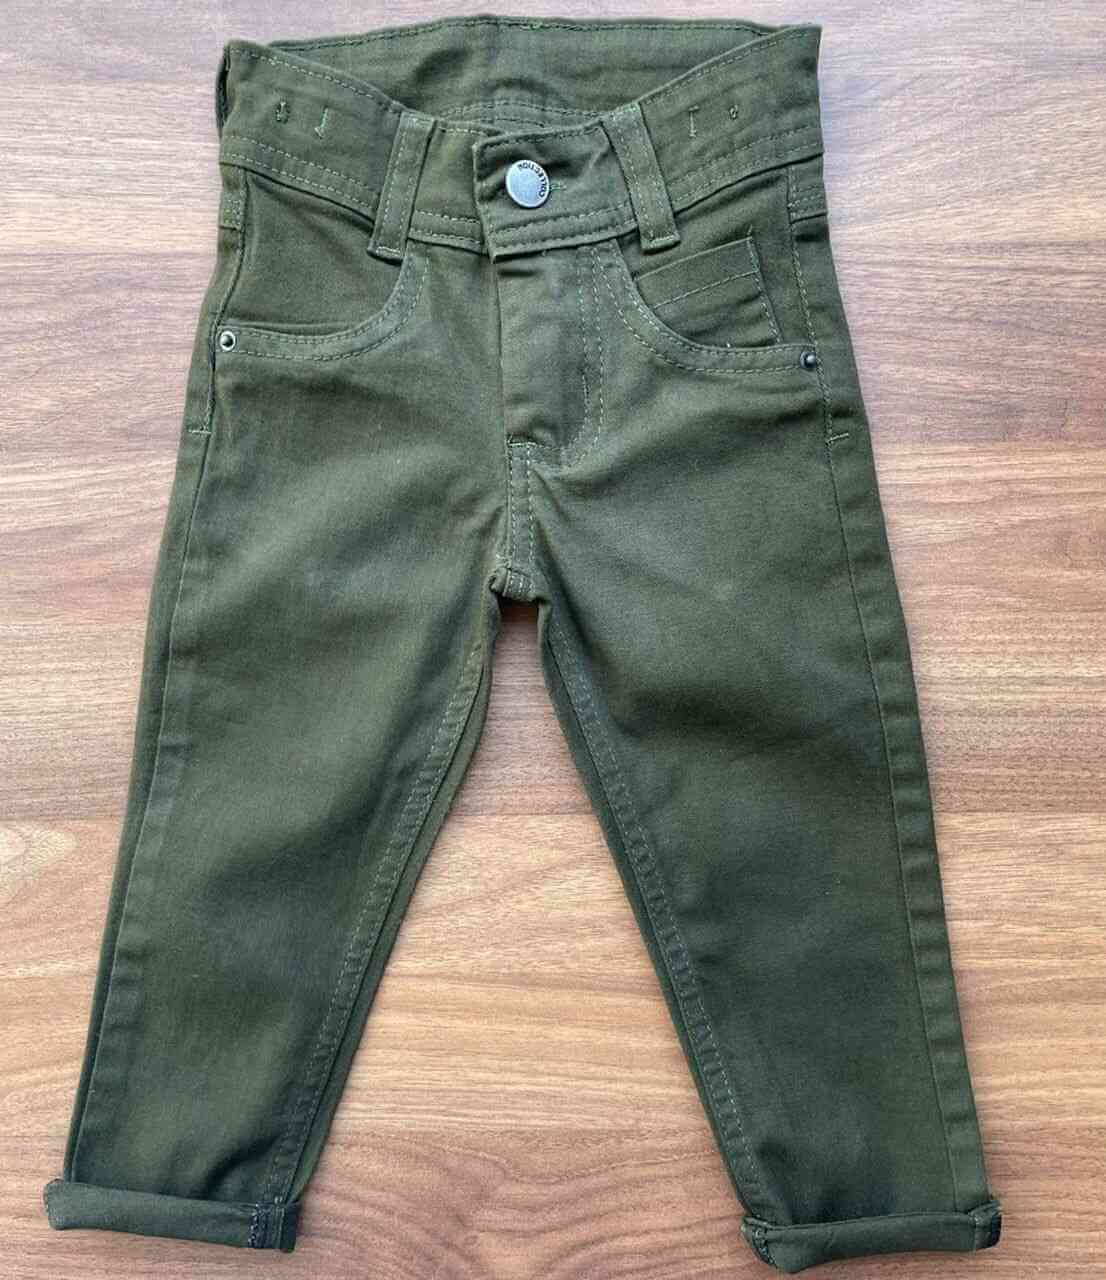 Calça Jeans Verde Musgo Infantil